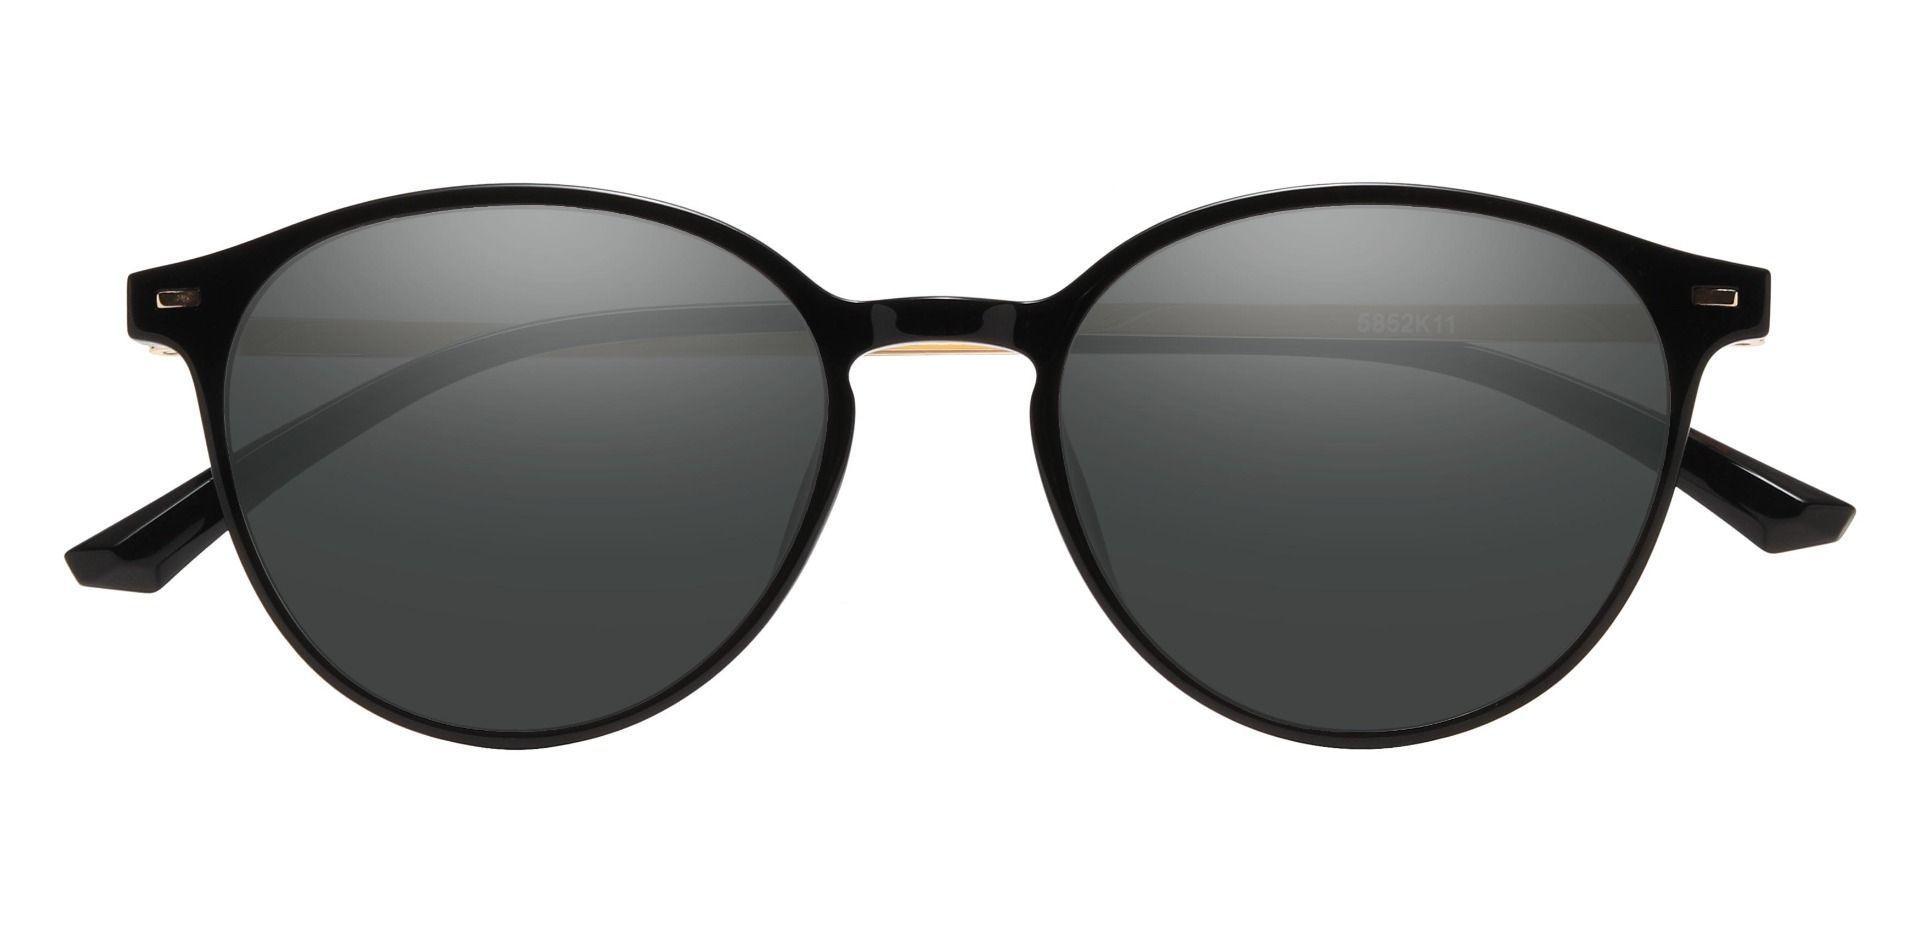 Springer Round Reading Sunglasses - Black Frame With Gray Lenses